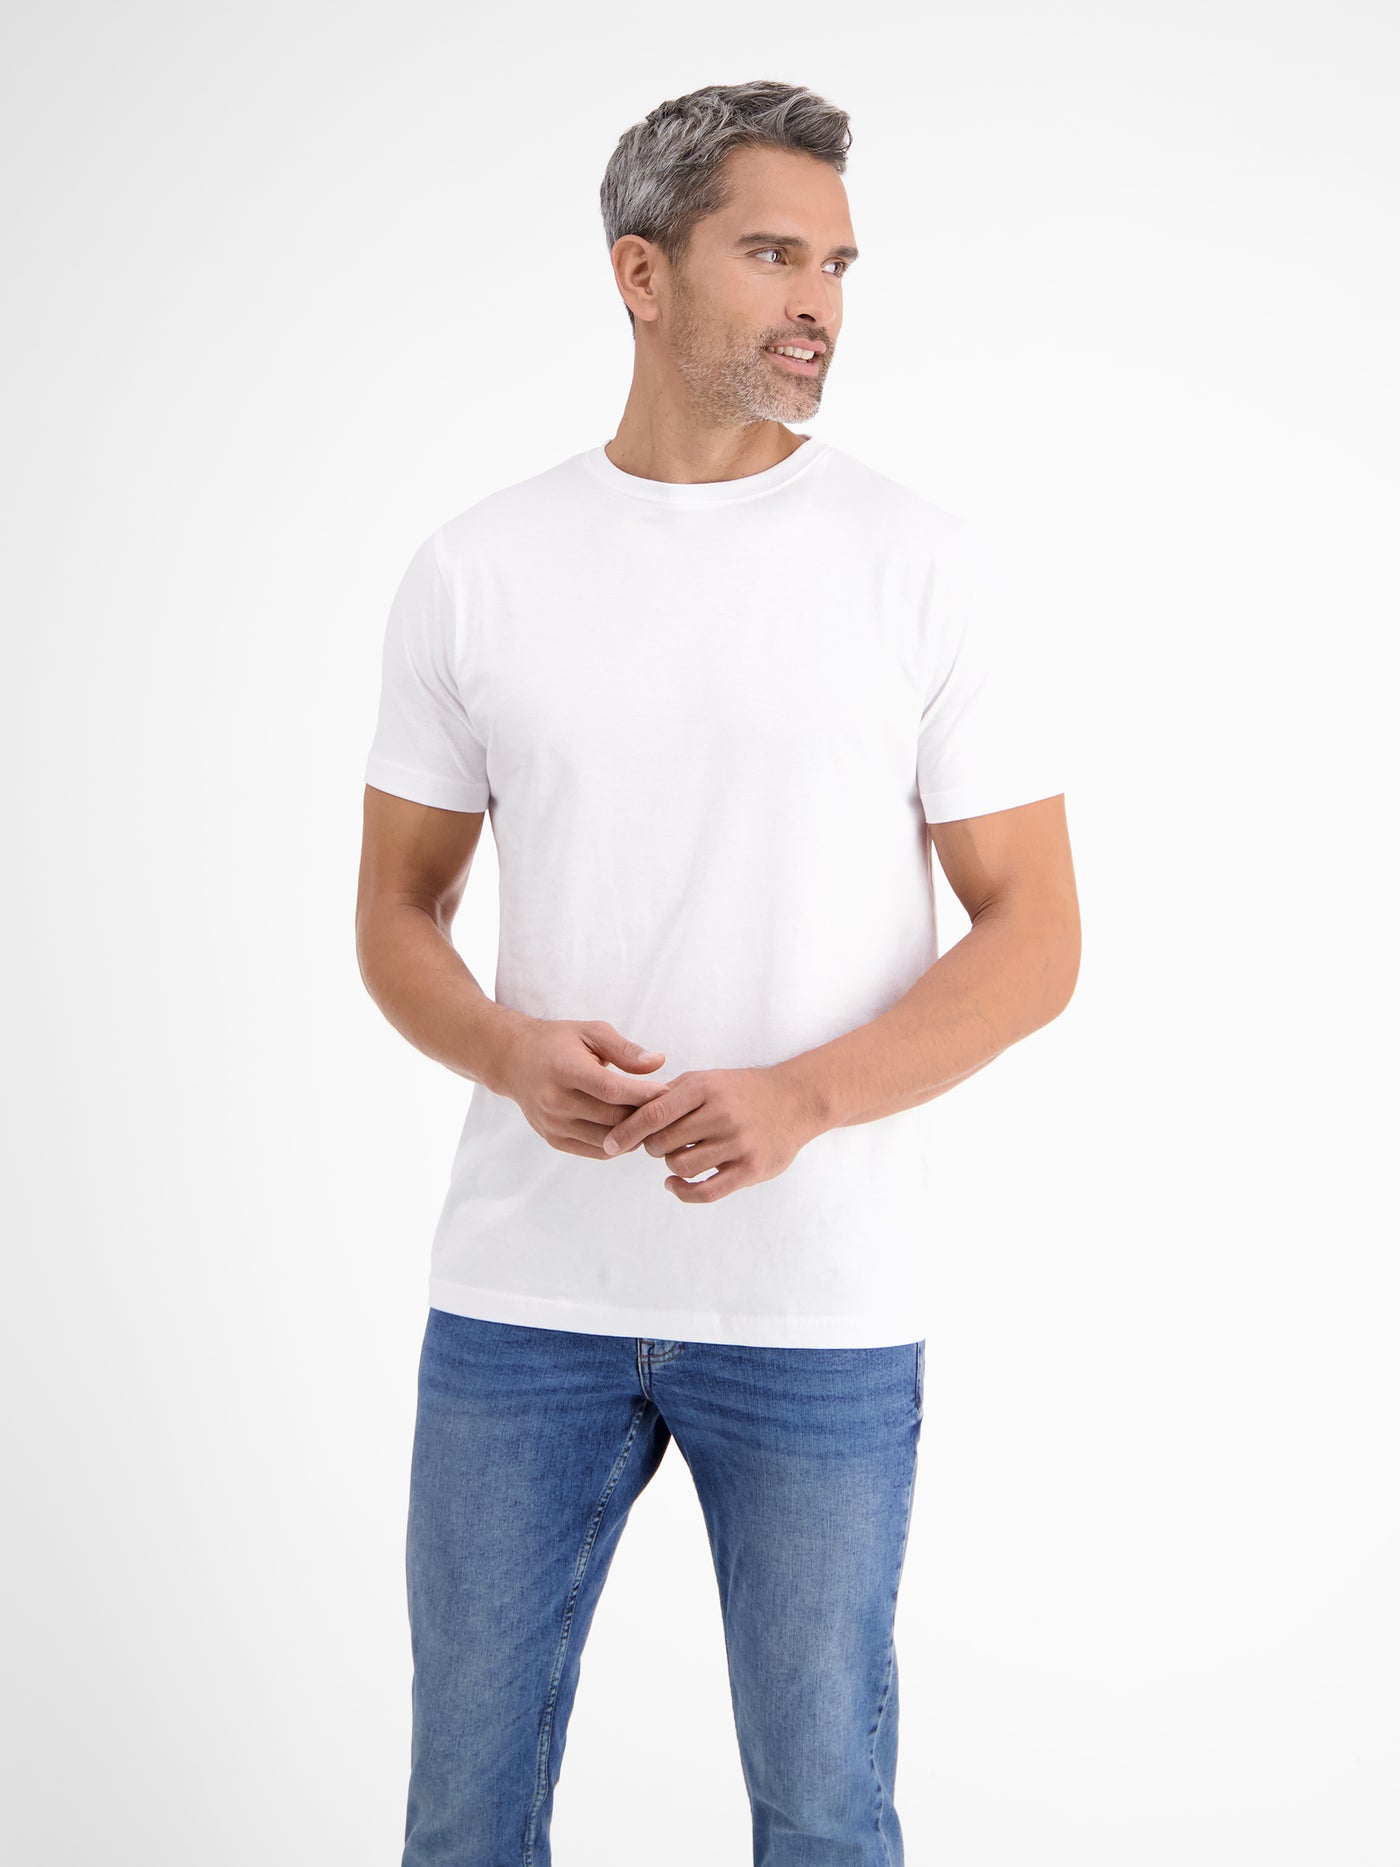 Dubbelpak T-shirts voor heren, ronde hals in premium katoenkwaliteit